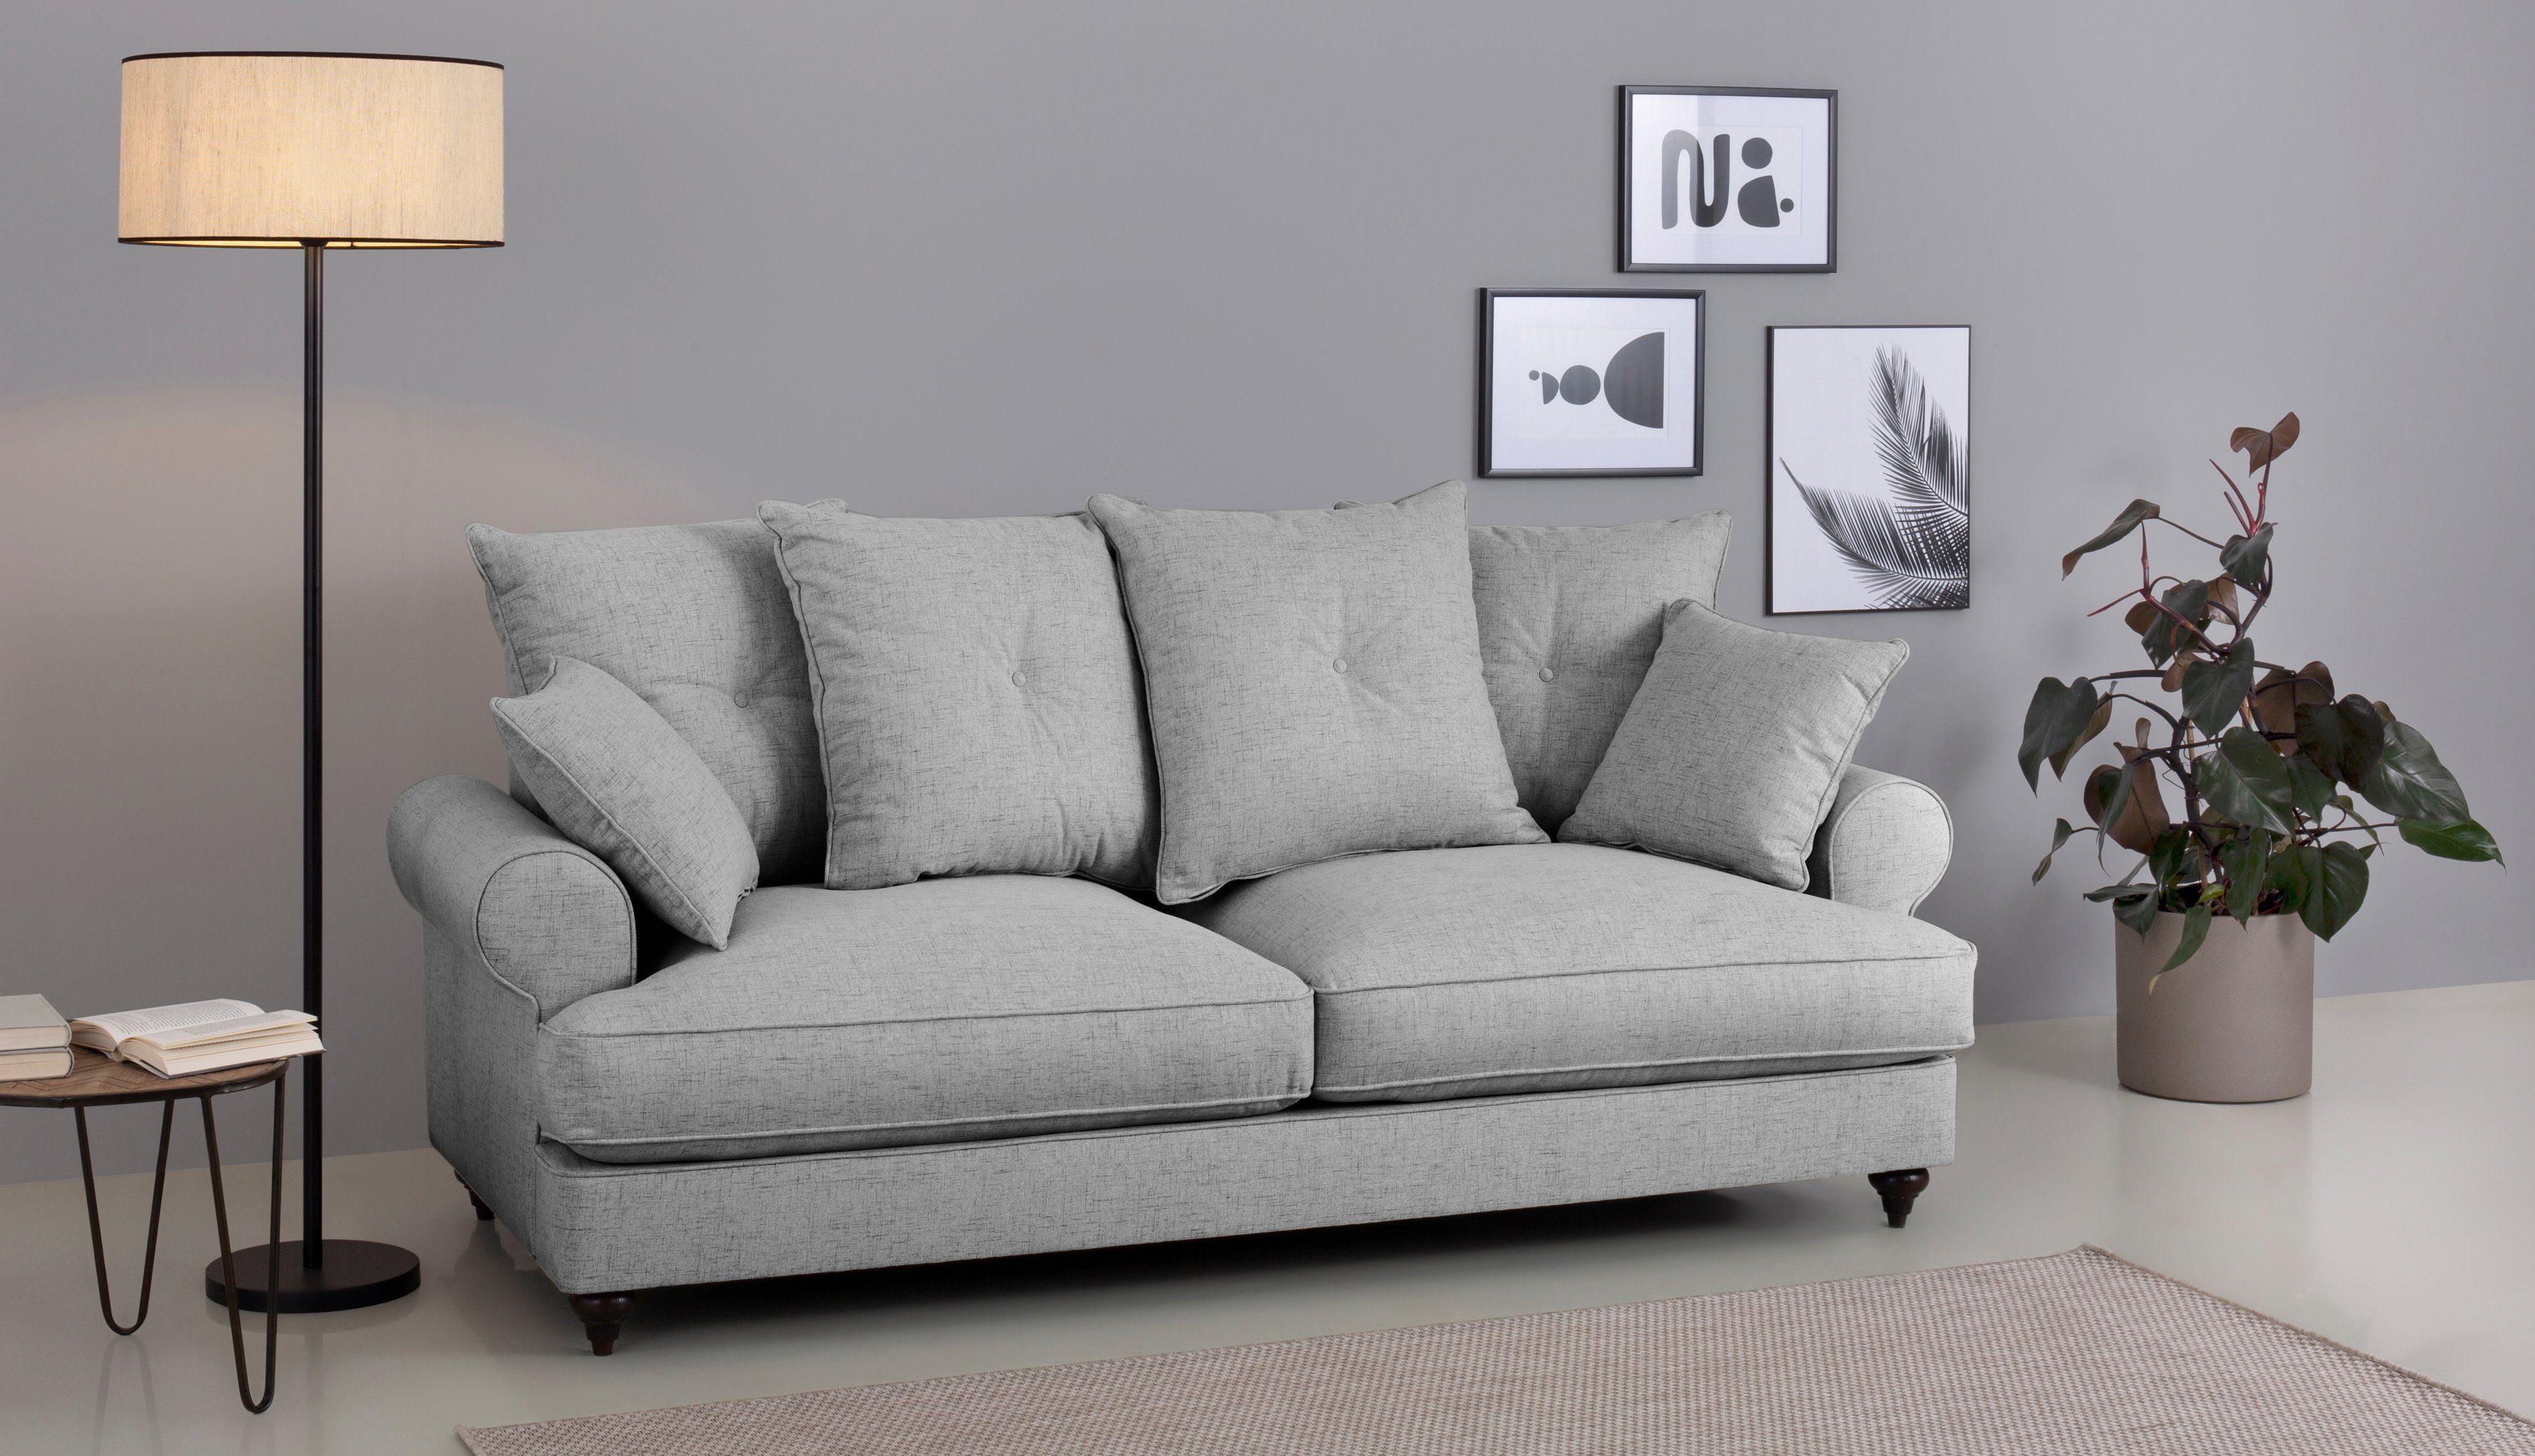 Home affaire 3-Sitzer Bloomer, mit hochwertigem Kaltschaum, in verschiedenen Farben erhältlich light grey